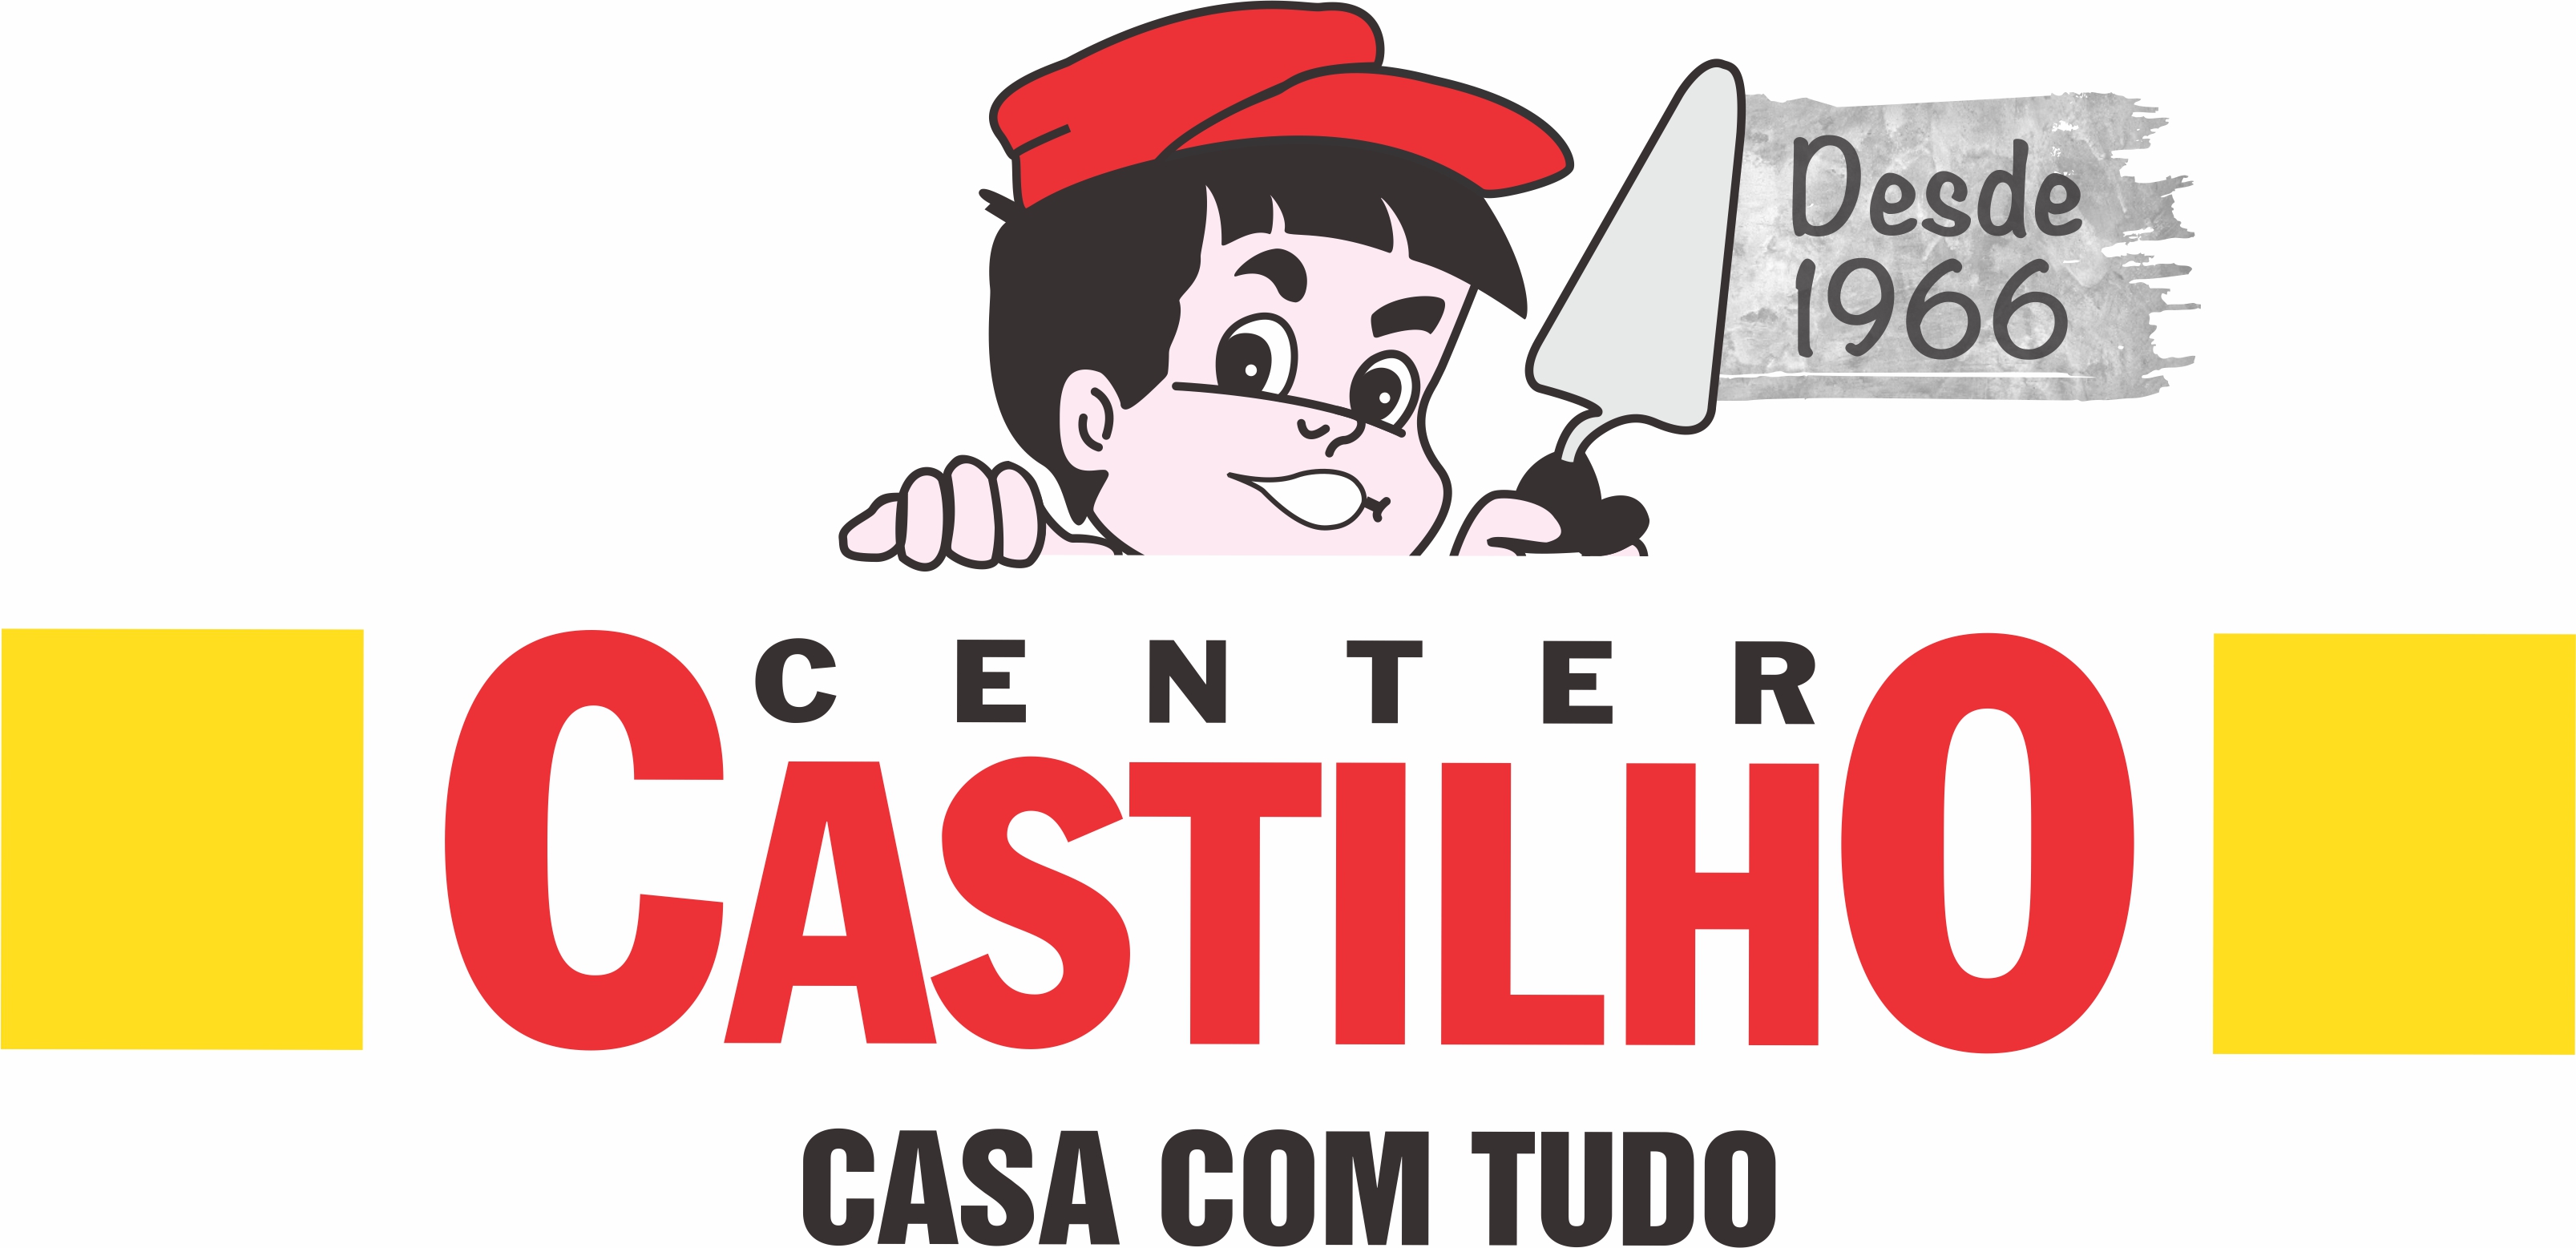 CENTER CASTILHO - São Paulo, SP